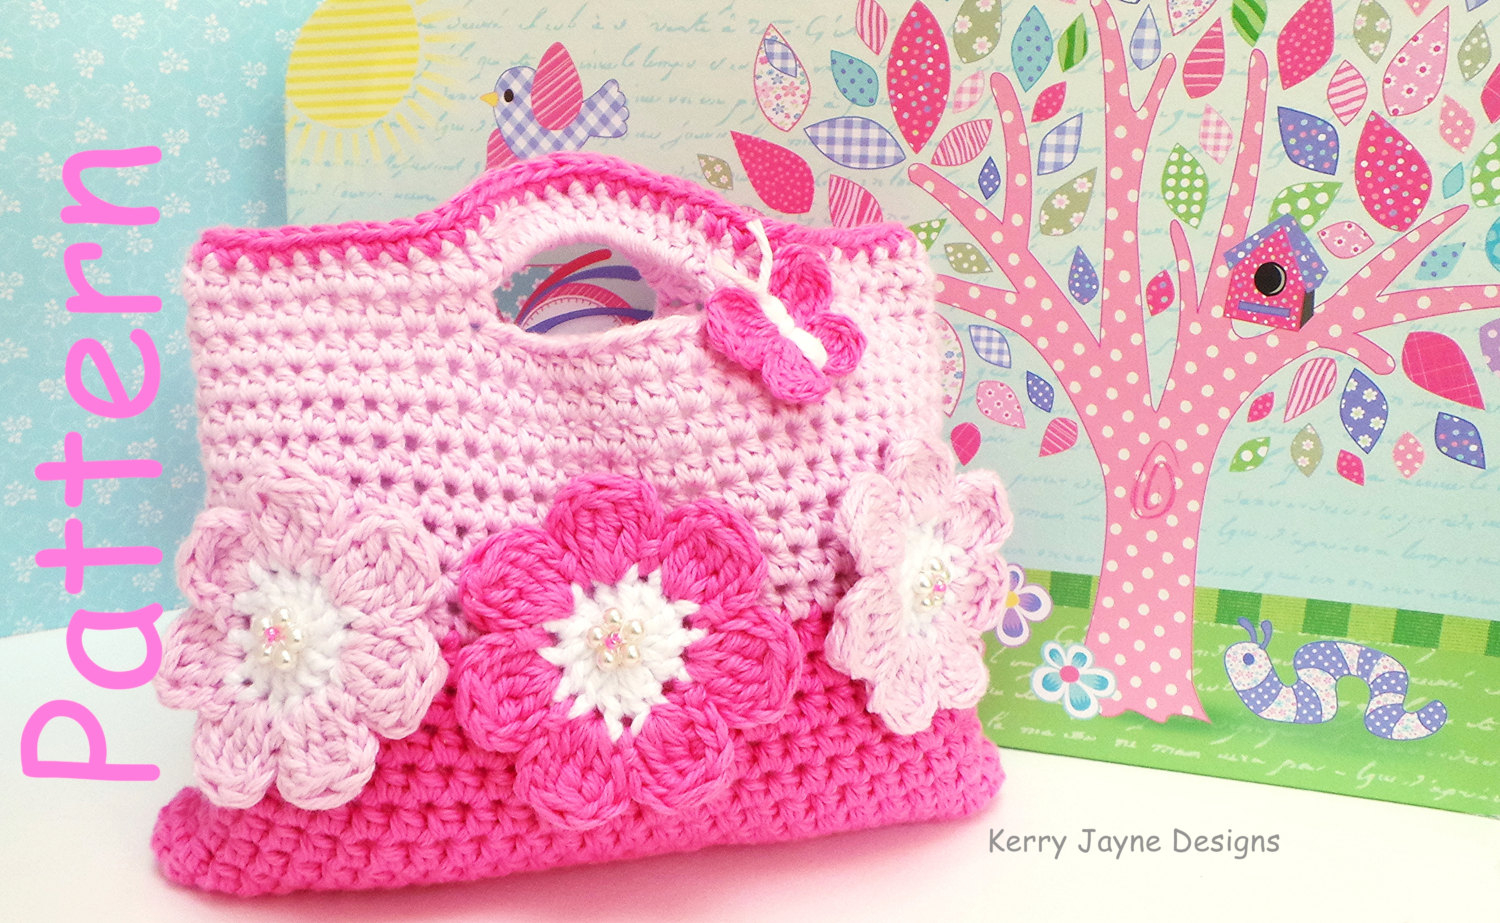 Designer Crochet Bag Patterns The Pink Flower Crochet Bag Pattern Kerry Jayne Designs Etsy